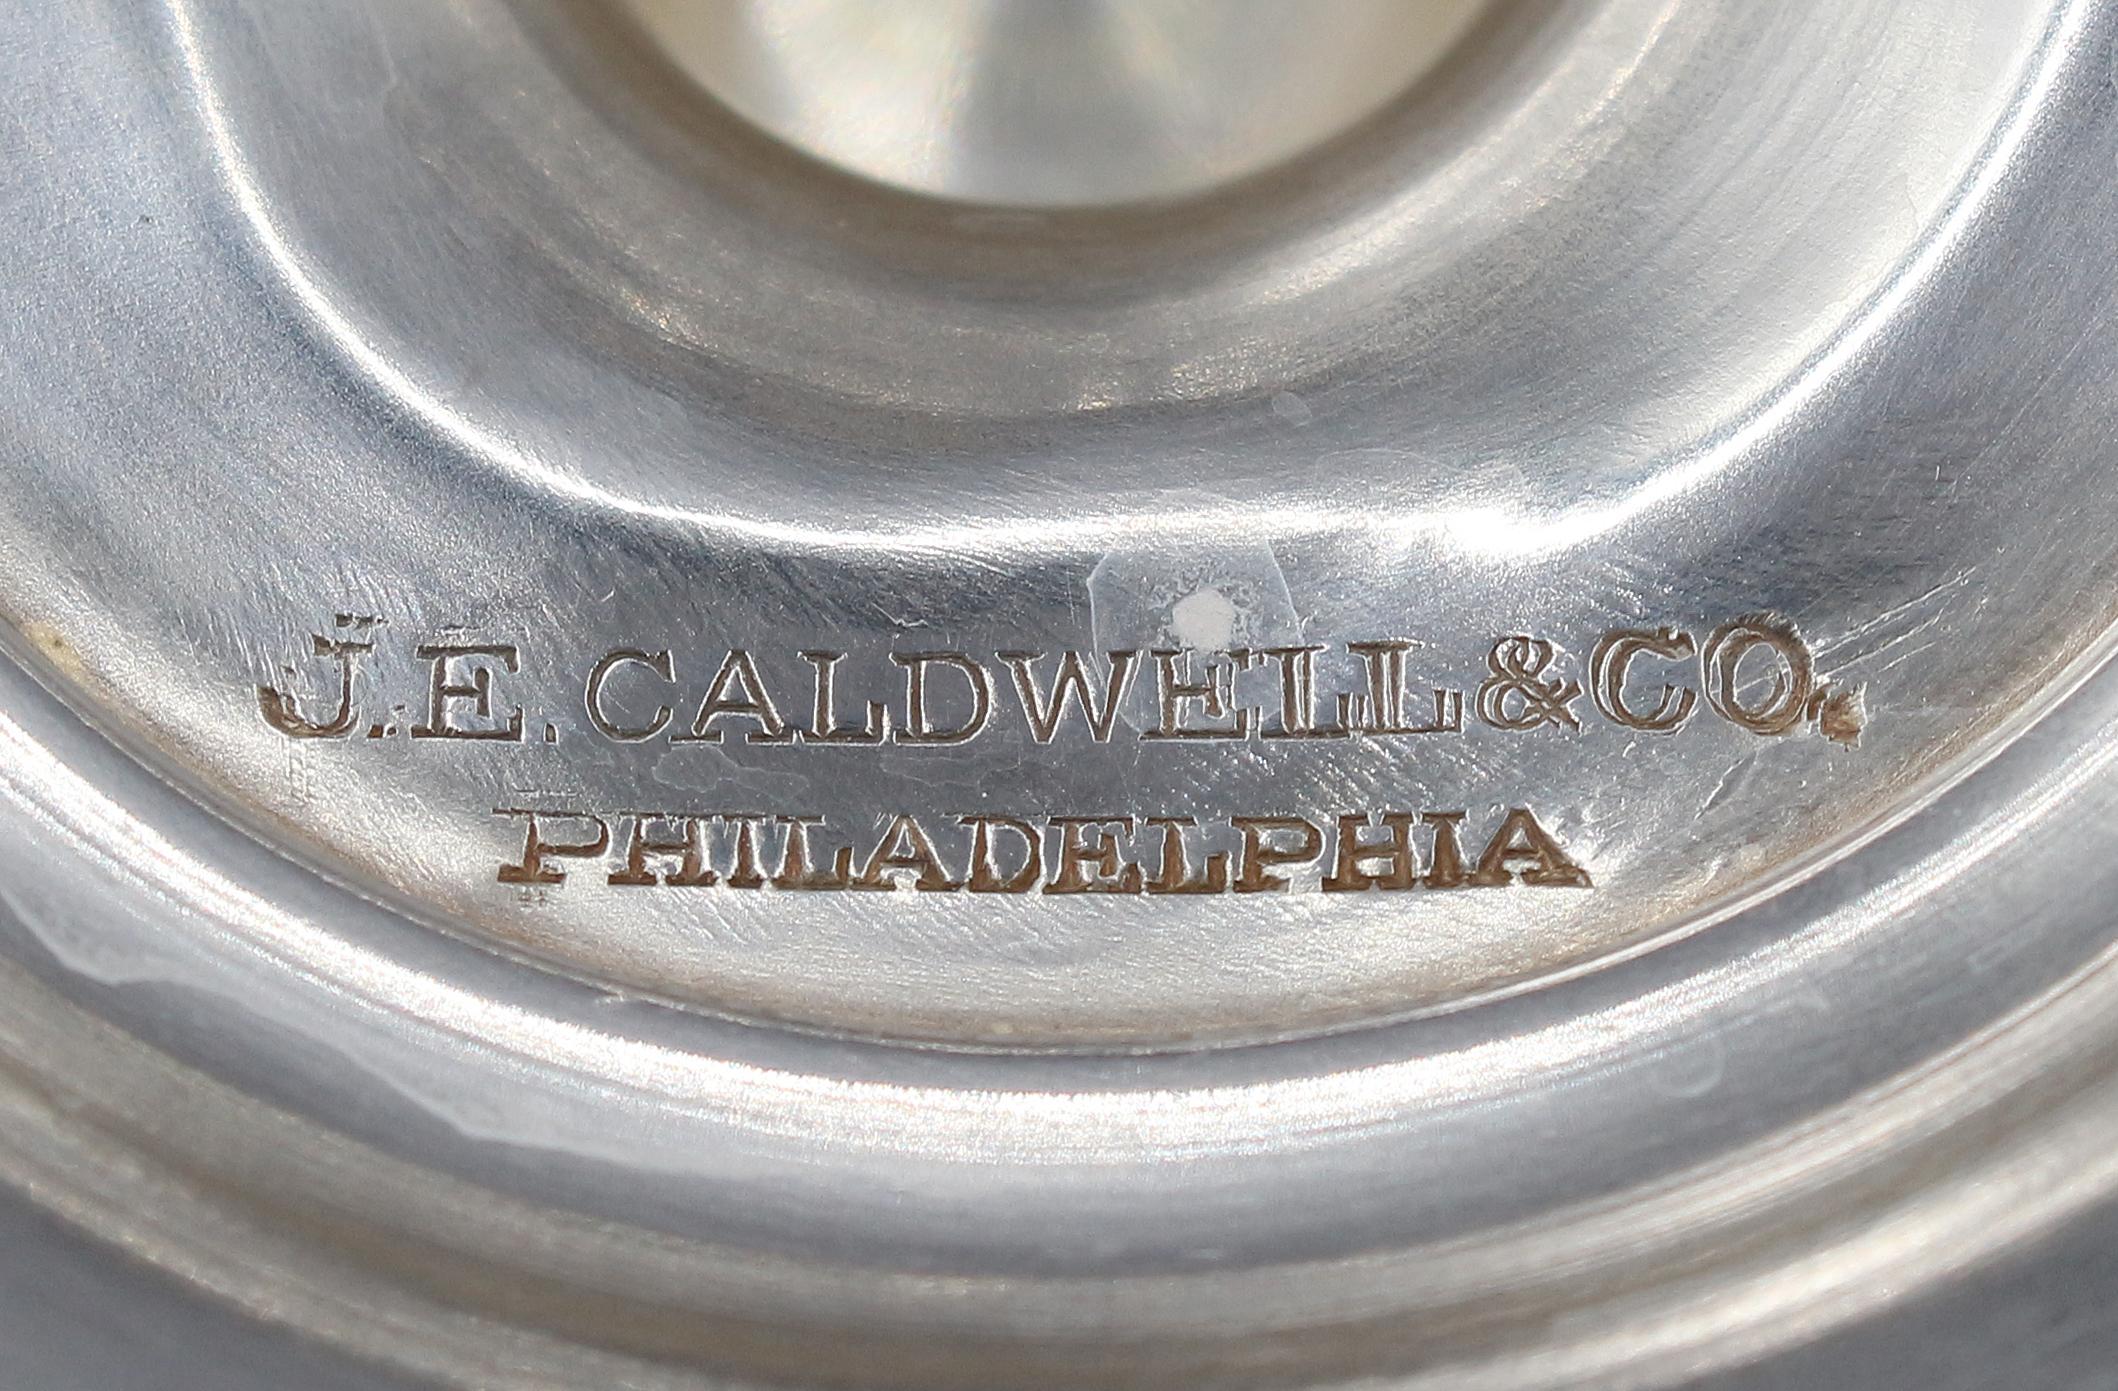 Circa 1930s Sterling Silver Sugar Caster by J.E. Caldwell & Co. 2